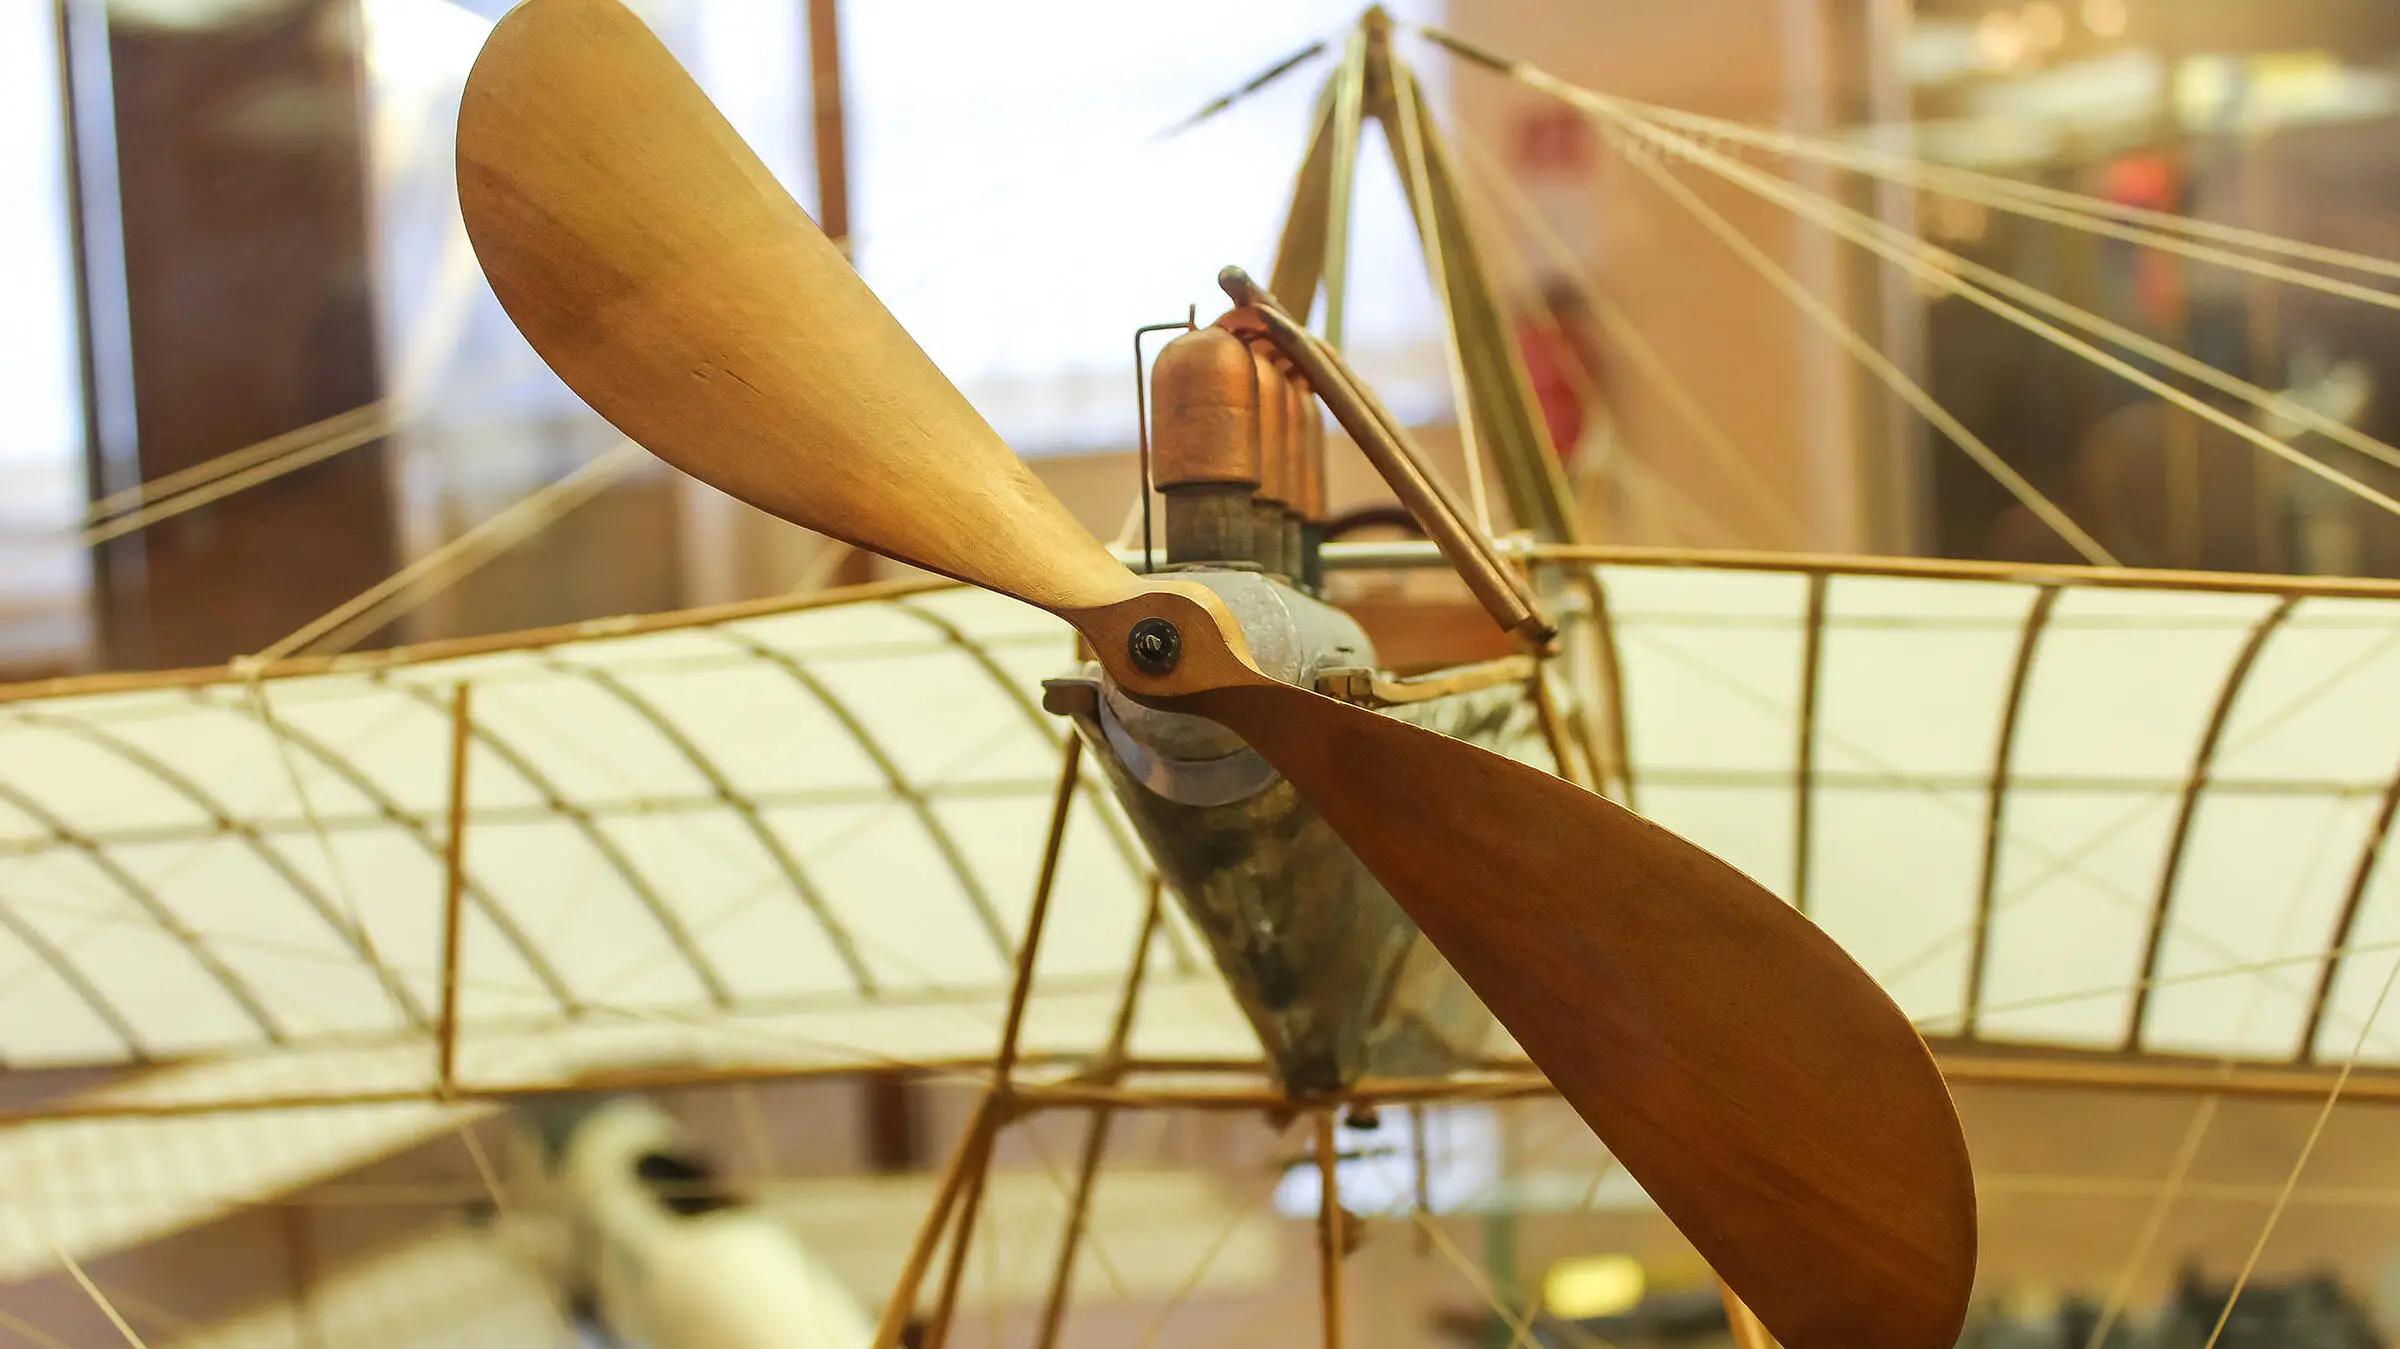 Vista detallada de un avión de madera